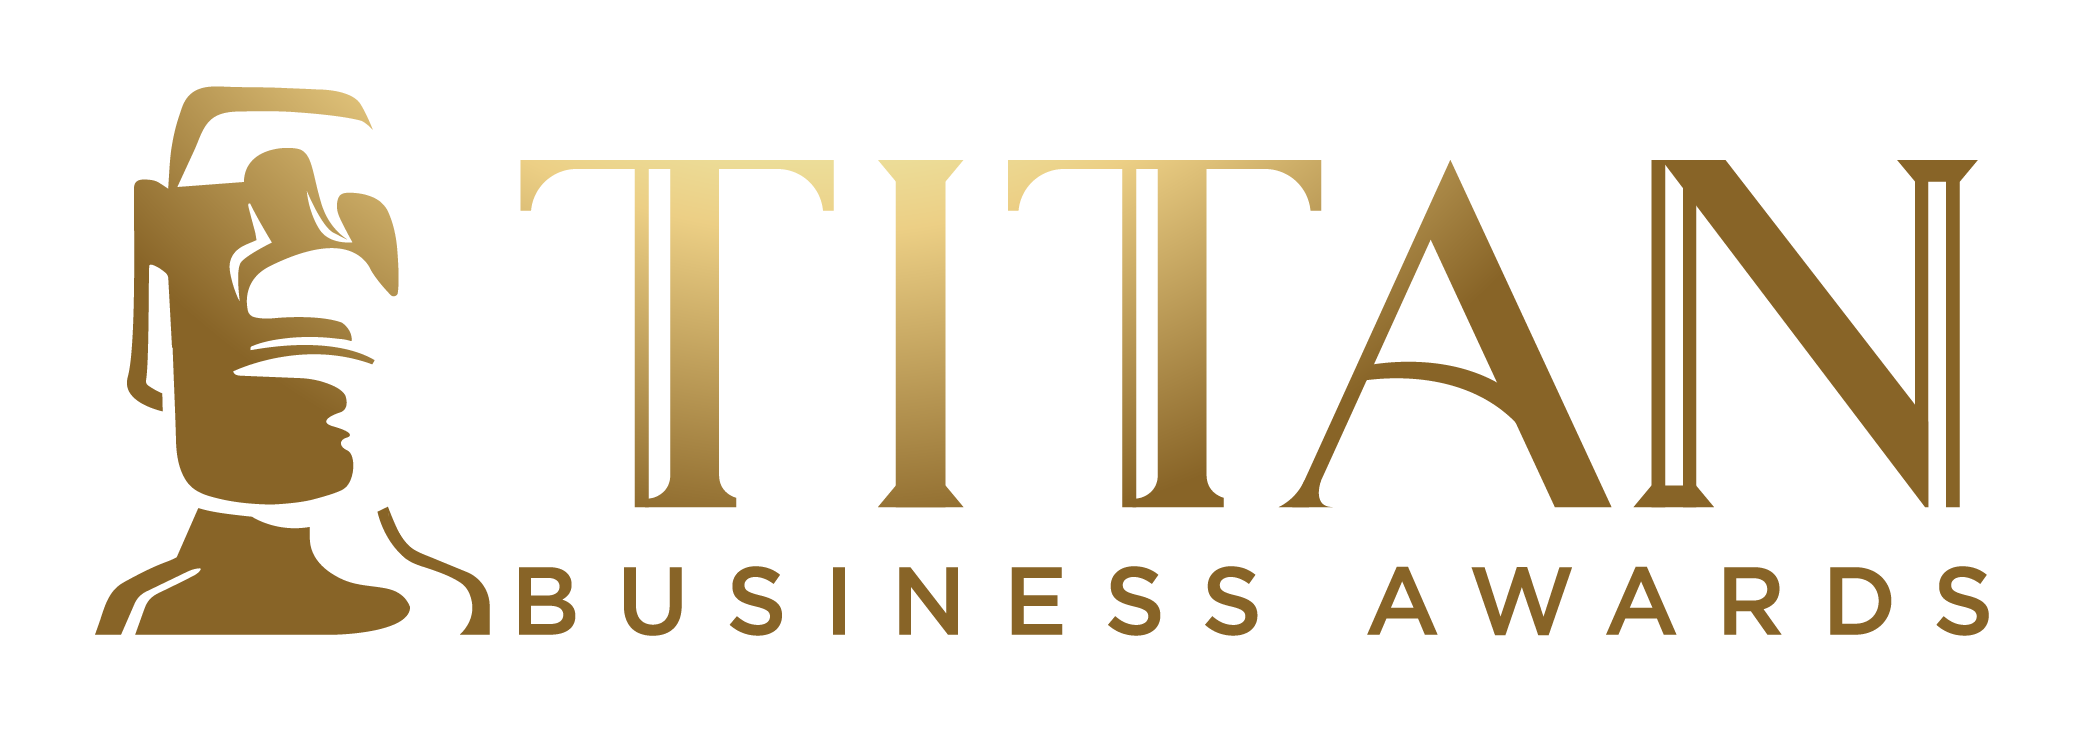 Titan Business Awards